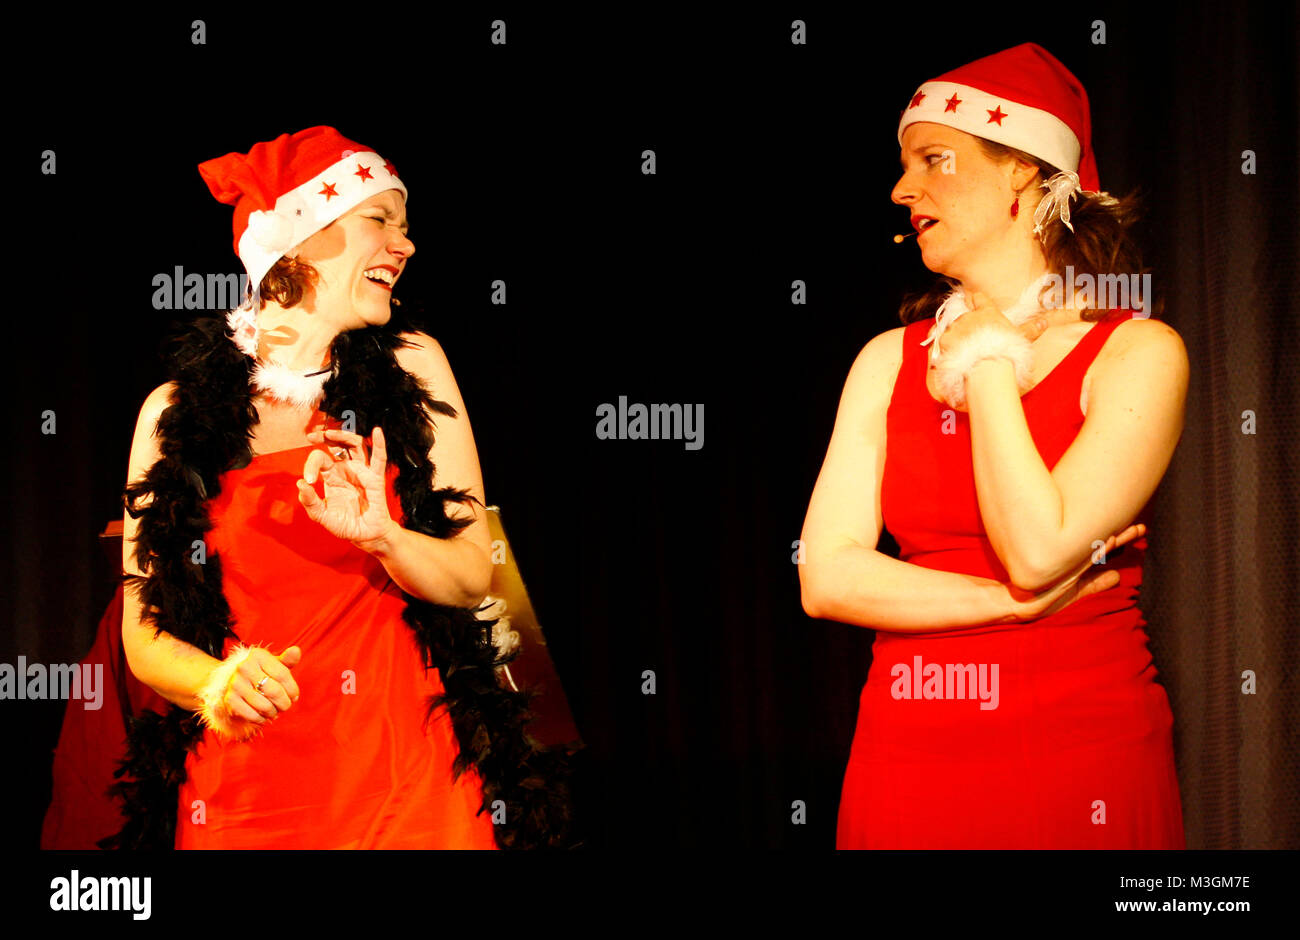 Fritzi und Suse comedy Duo aus dem Ruhrpott m Hamburger Foolsgarden mit ihrem vorweihnachtliche Programm - Advent, Advent, die Fritzi brennt Unser besinnliches Comedy-Weihnachtsprogramm schräg! In bekannt schön und durchgeknallter Manier verzaubern, Suse und Fritzi Nonne auch ihr Publikum in die Wunderwelt des Weihnachtsfestes. Ja-auch This Nummern-oper Damen feiern Weihnachten und versuchen sich selbst in vorweihnachtliche Stimmung zu versetzen. Dass das natürlich nicht immer so läuft, wie man sich das vorstellt, verspricht ja schon der Programmtitel "Advent, Advent, die Fritzi brennt'. Neben Stockfoto